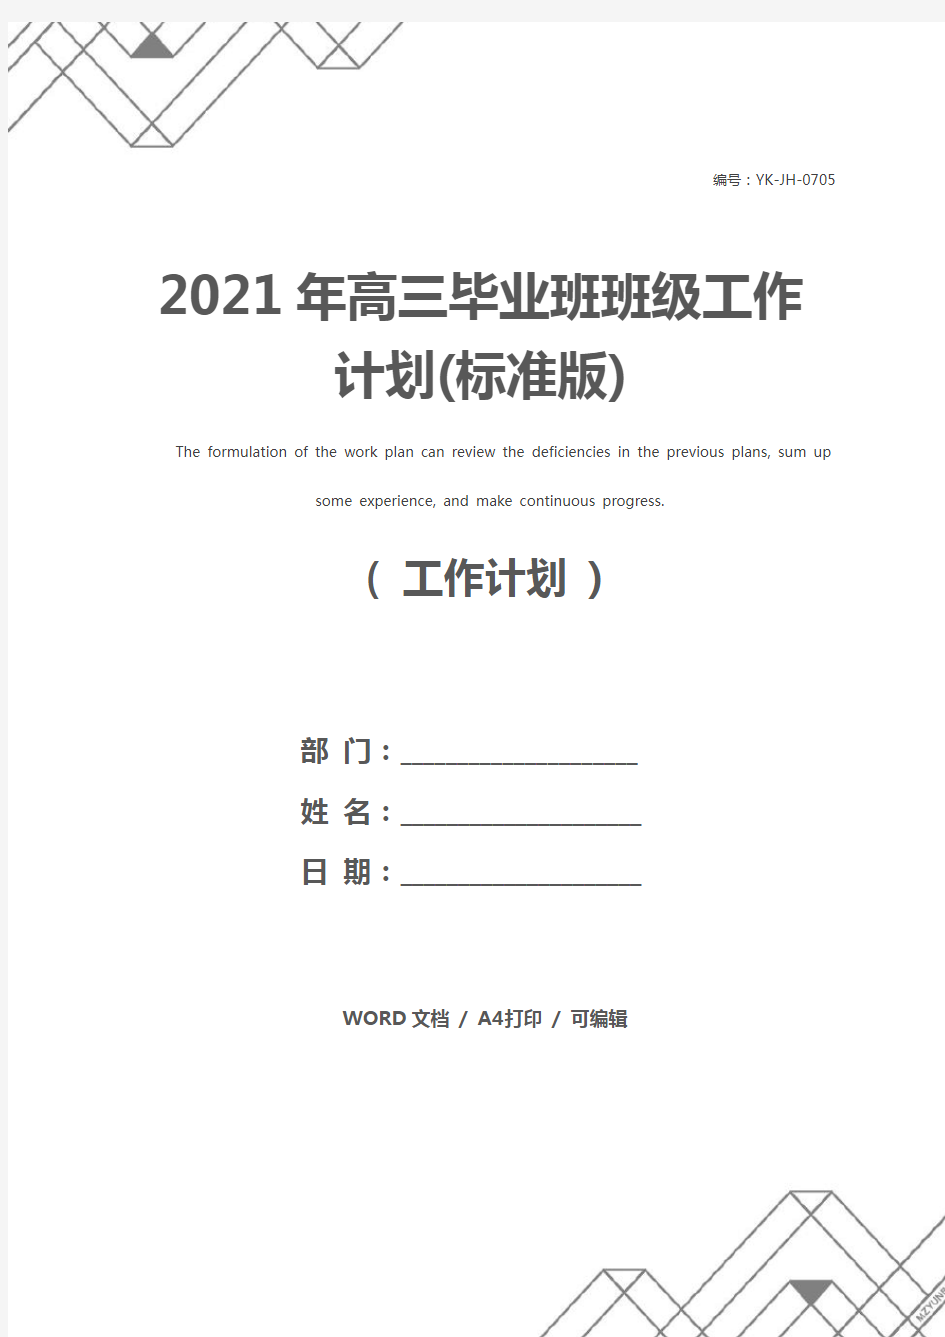 2021年高三毕业班班级工作计划(标准版)